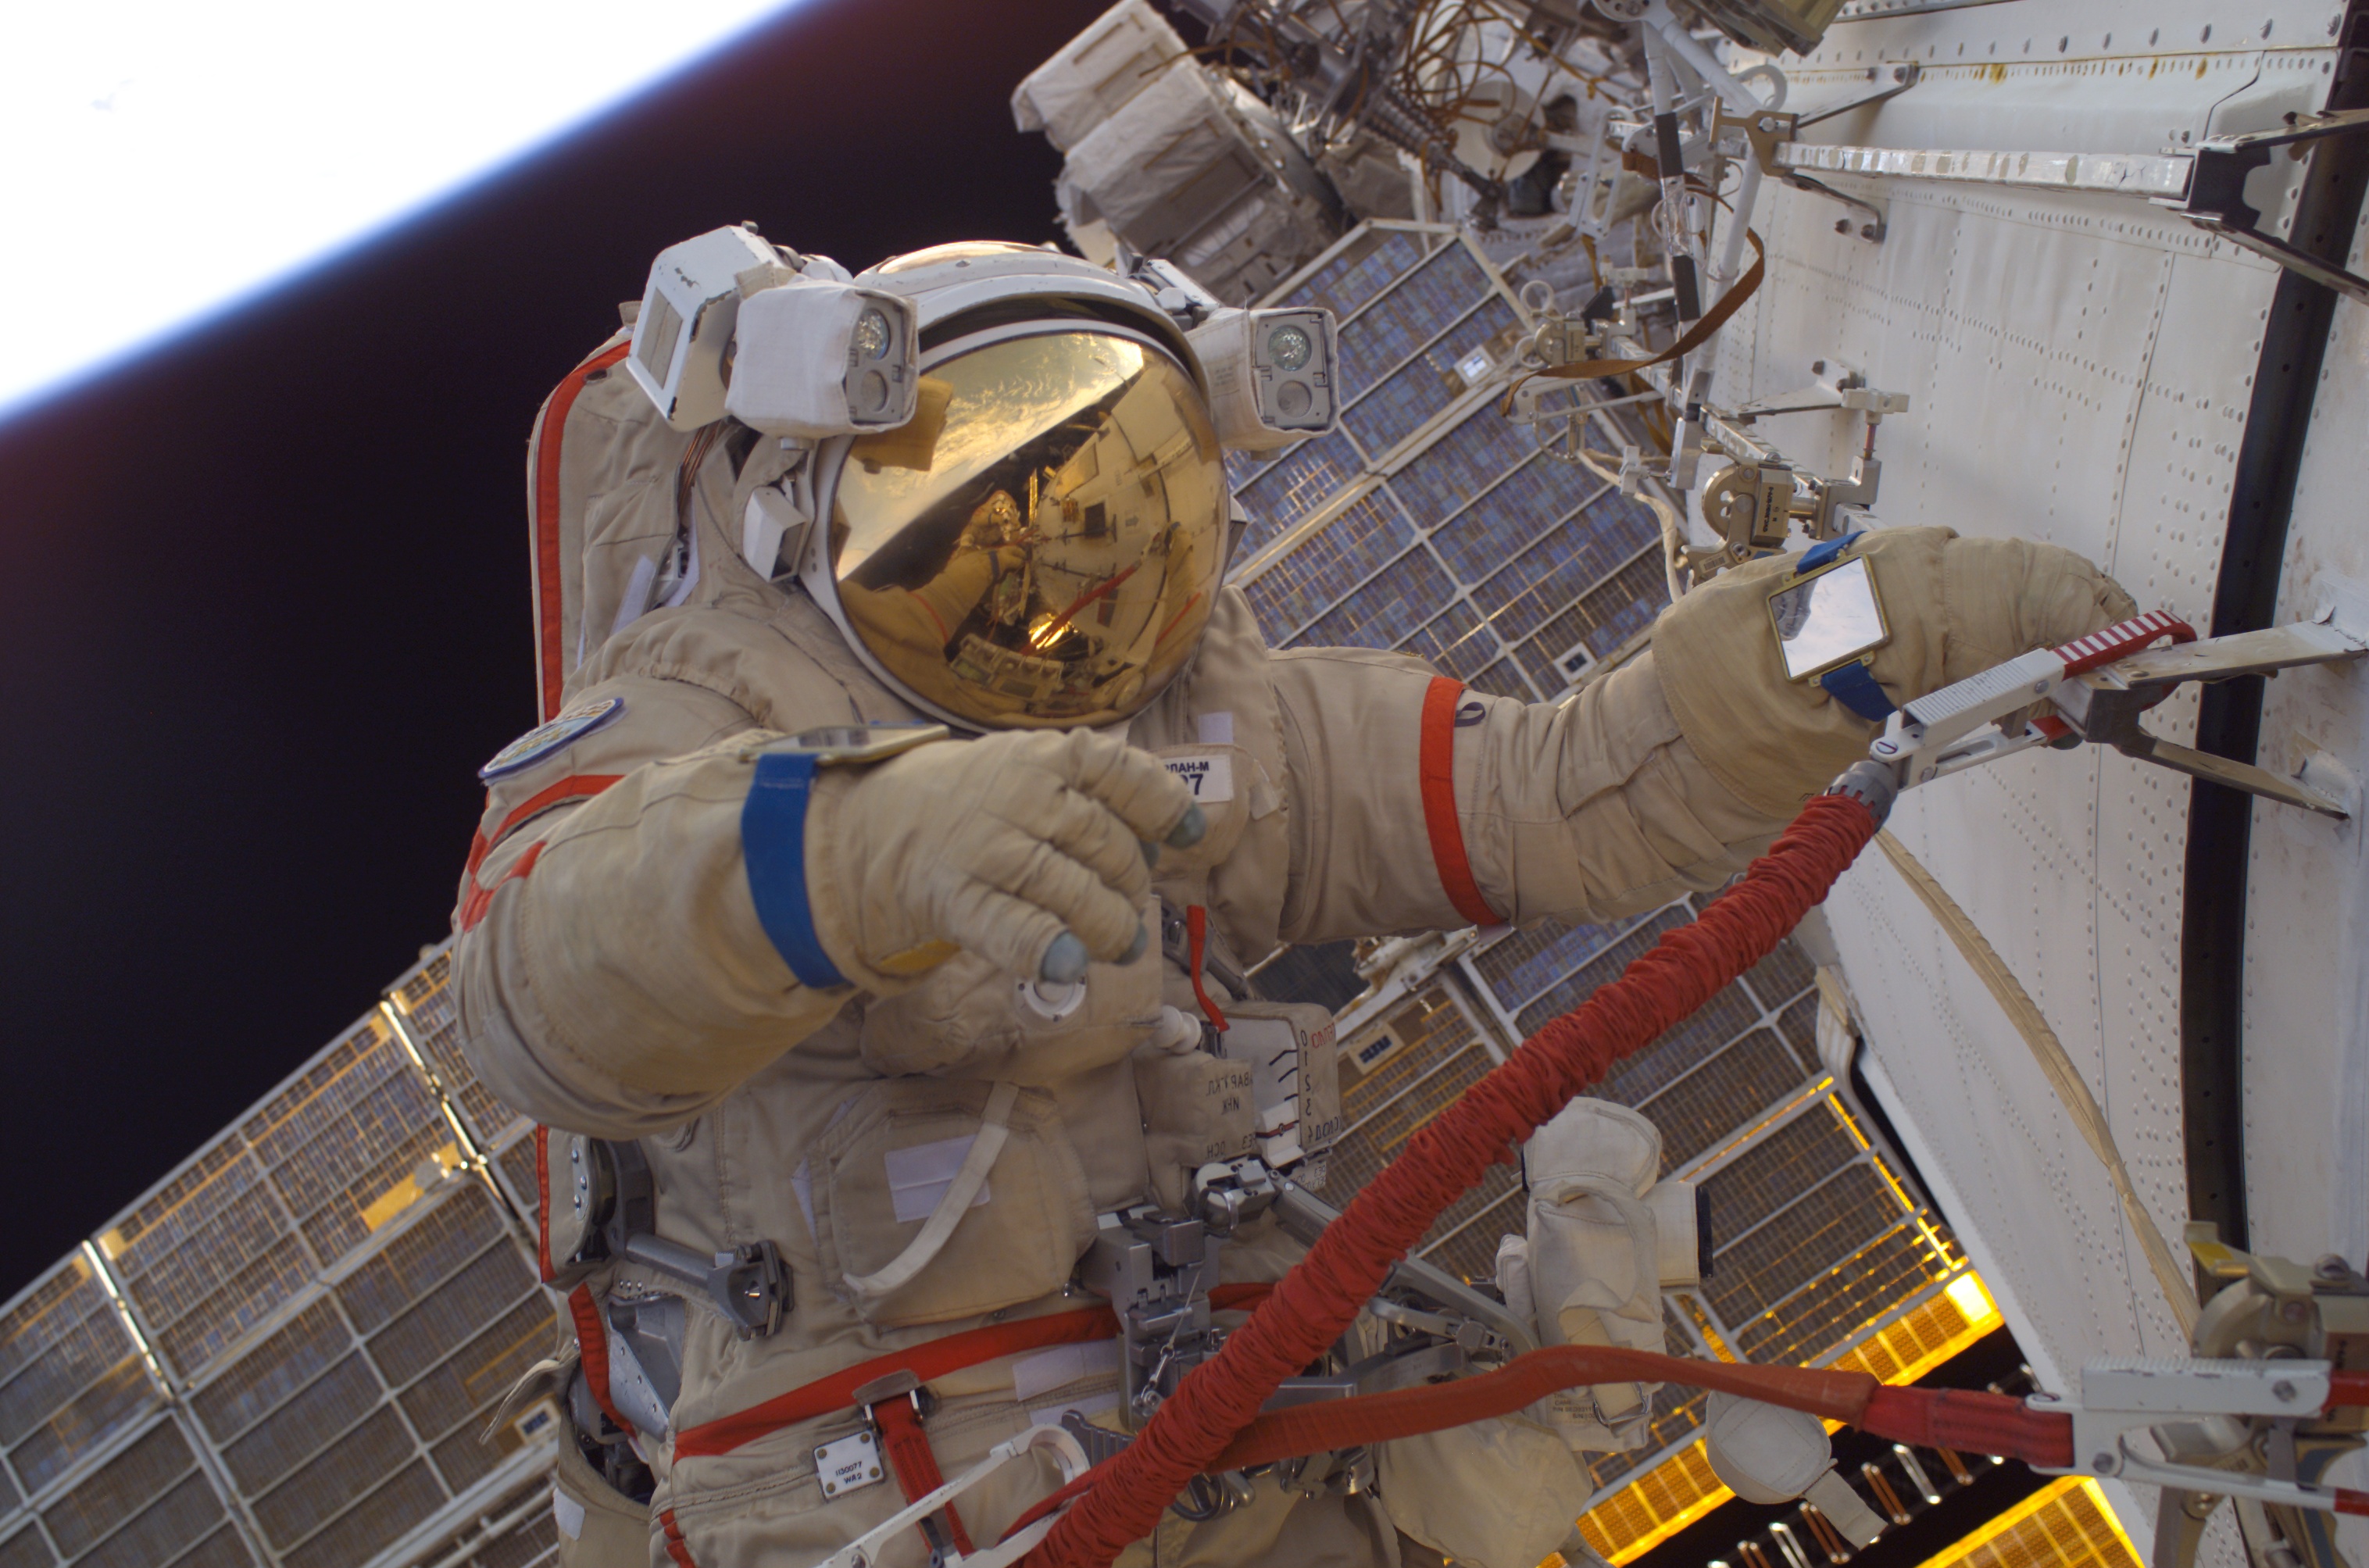 Скачать обои бесплатно Космос, Космонавт, Сделано Человеком, Наса картинка на рабочий стол ПК